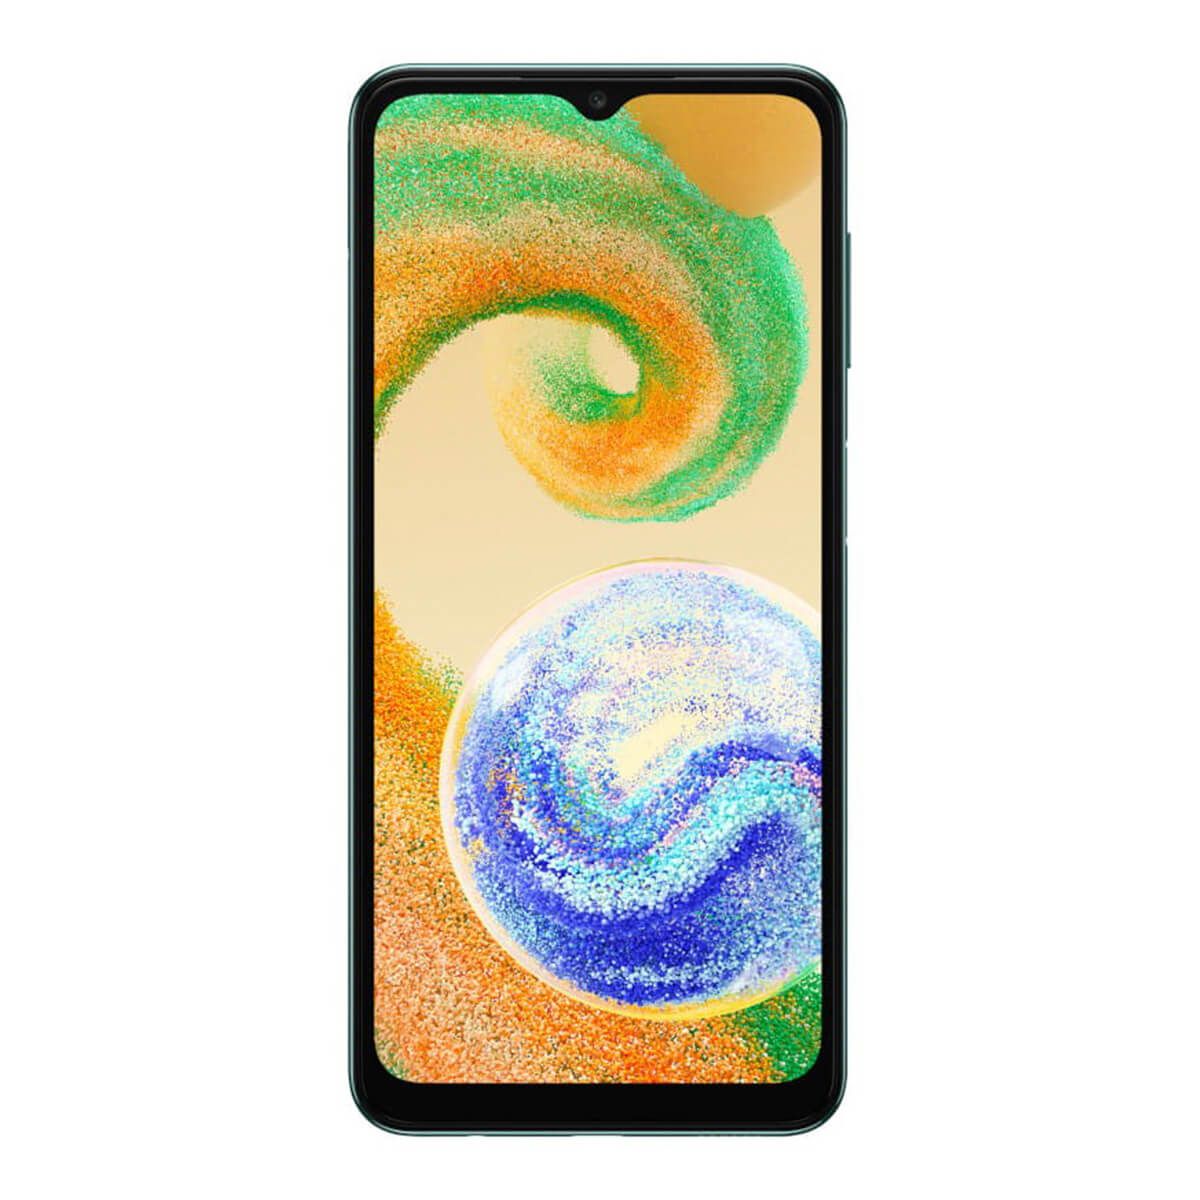 Samsung Galaxy A04s 3GB/32GB Green (Green) Dual SIM A047F